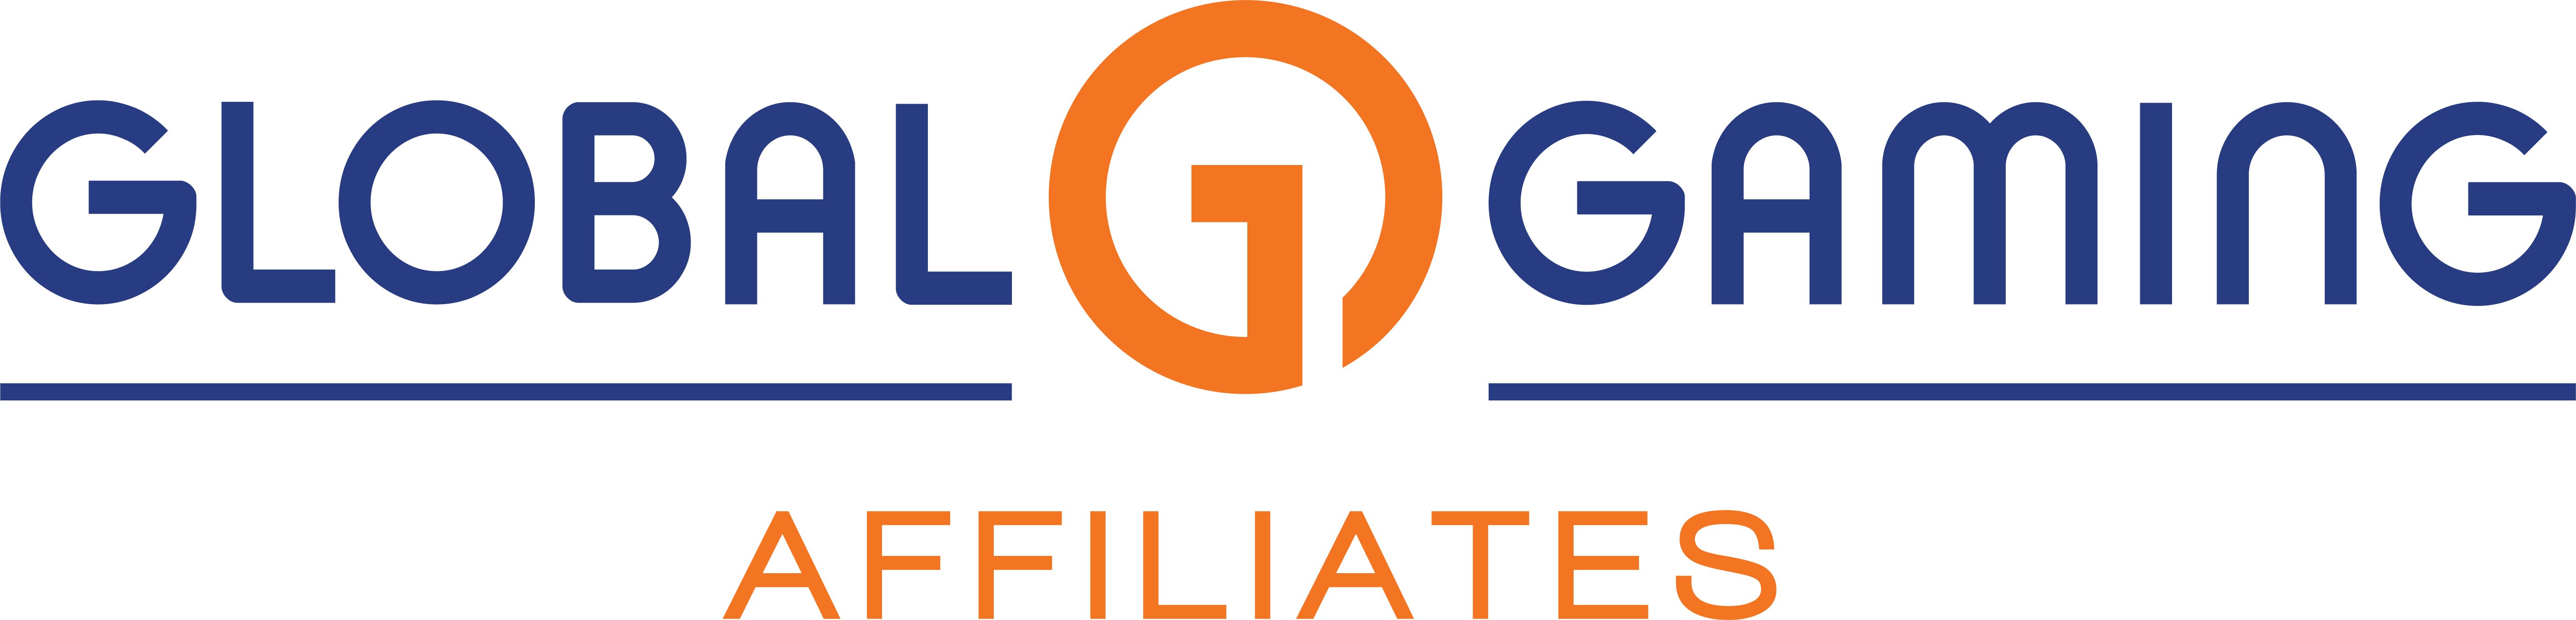 Logo Logo - Global Gaming Logo Png (5669x1364), Png Download